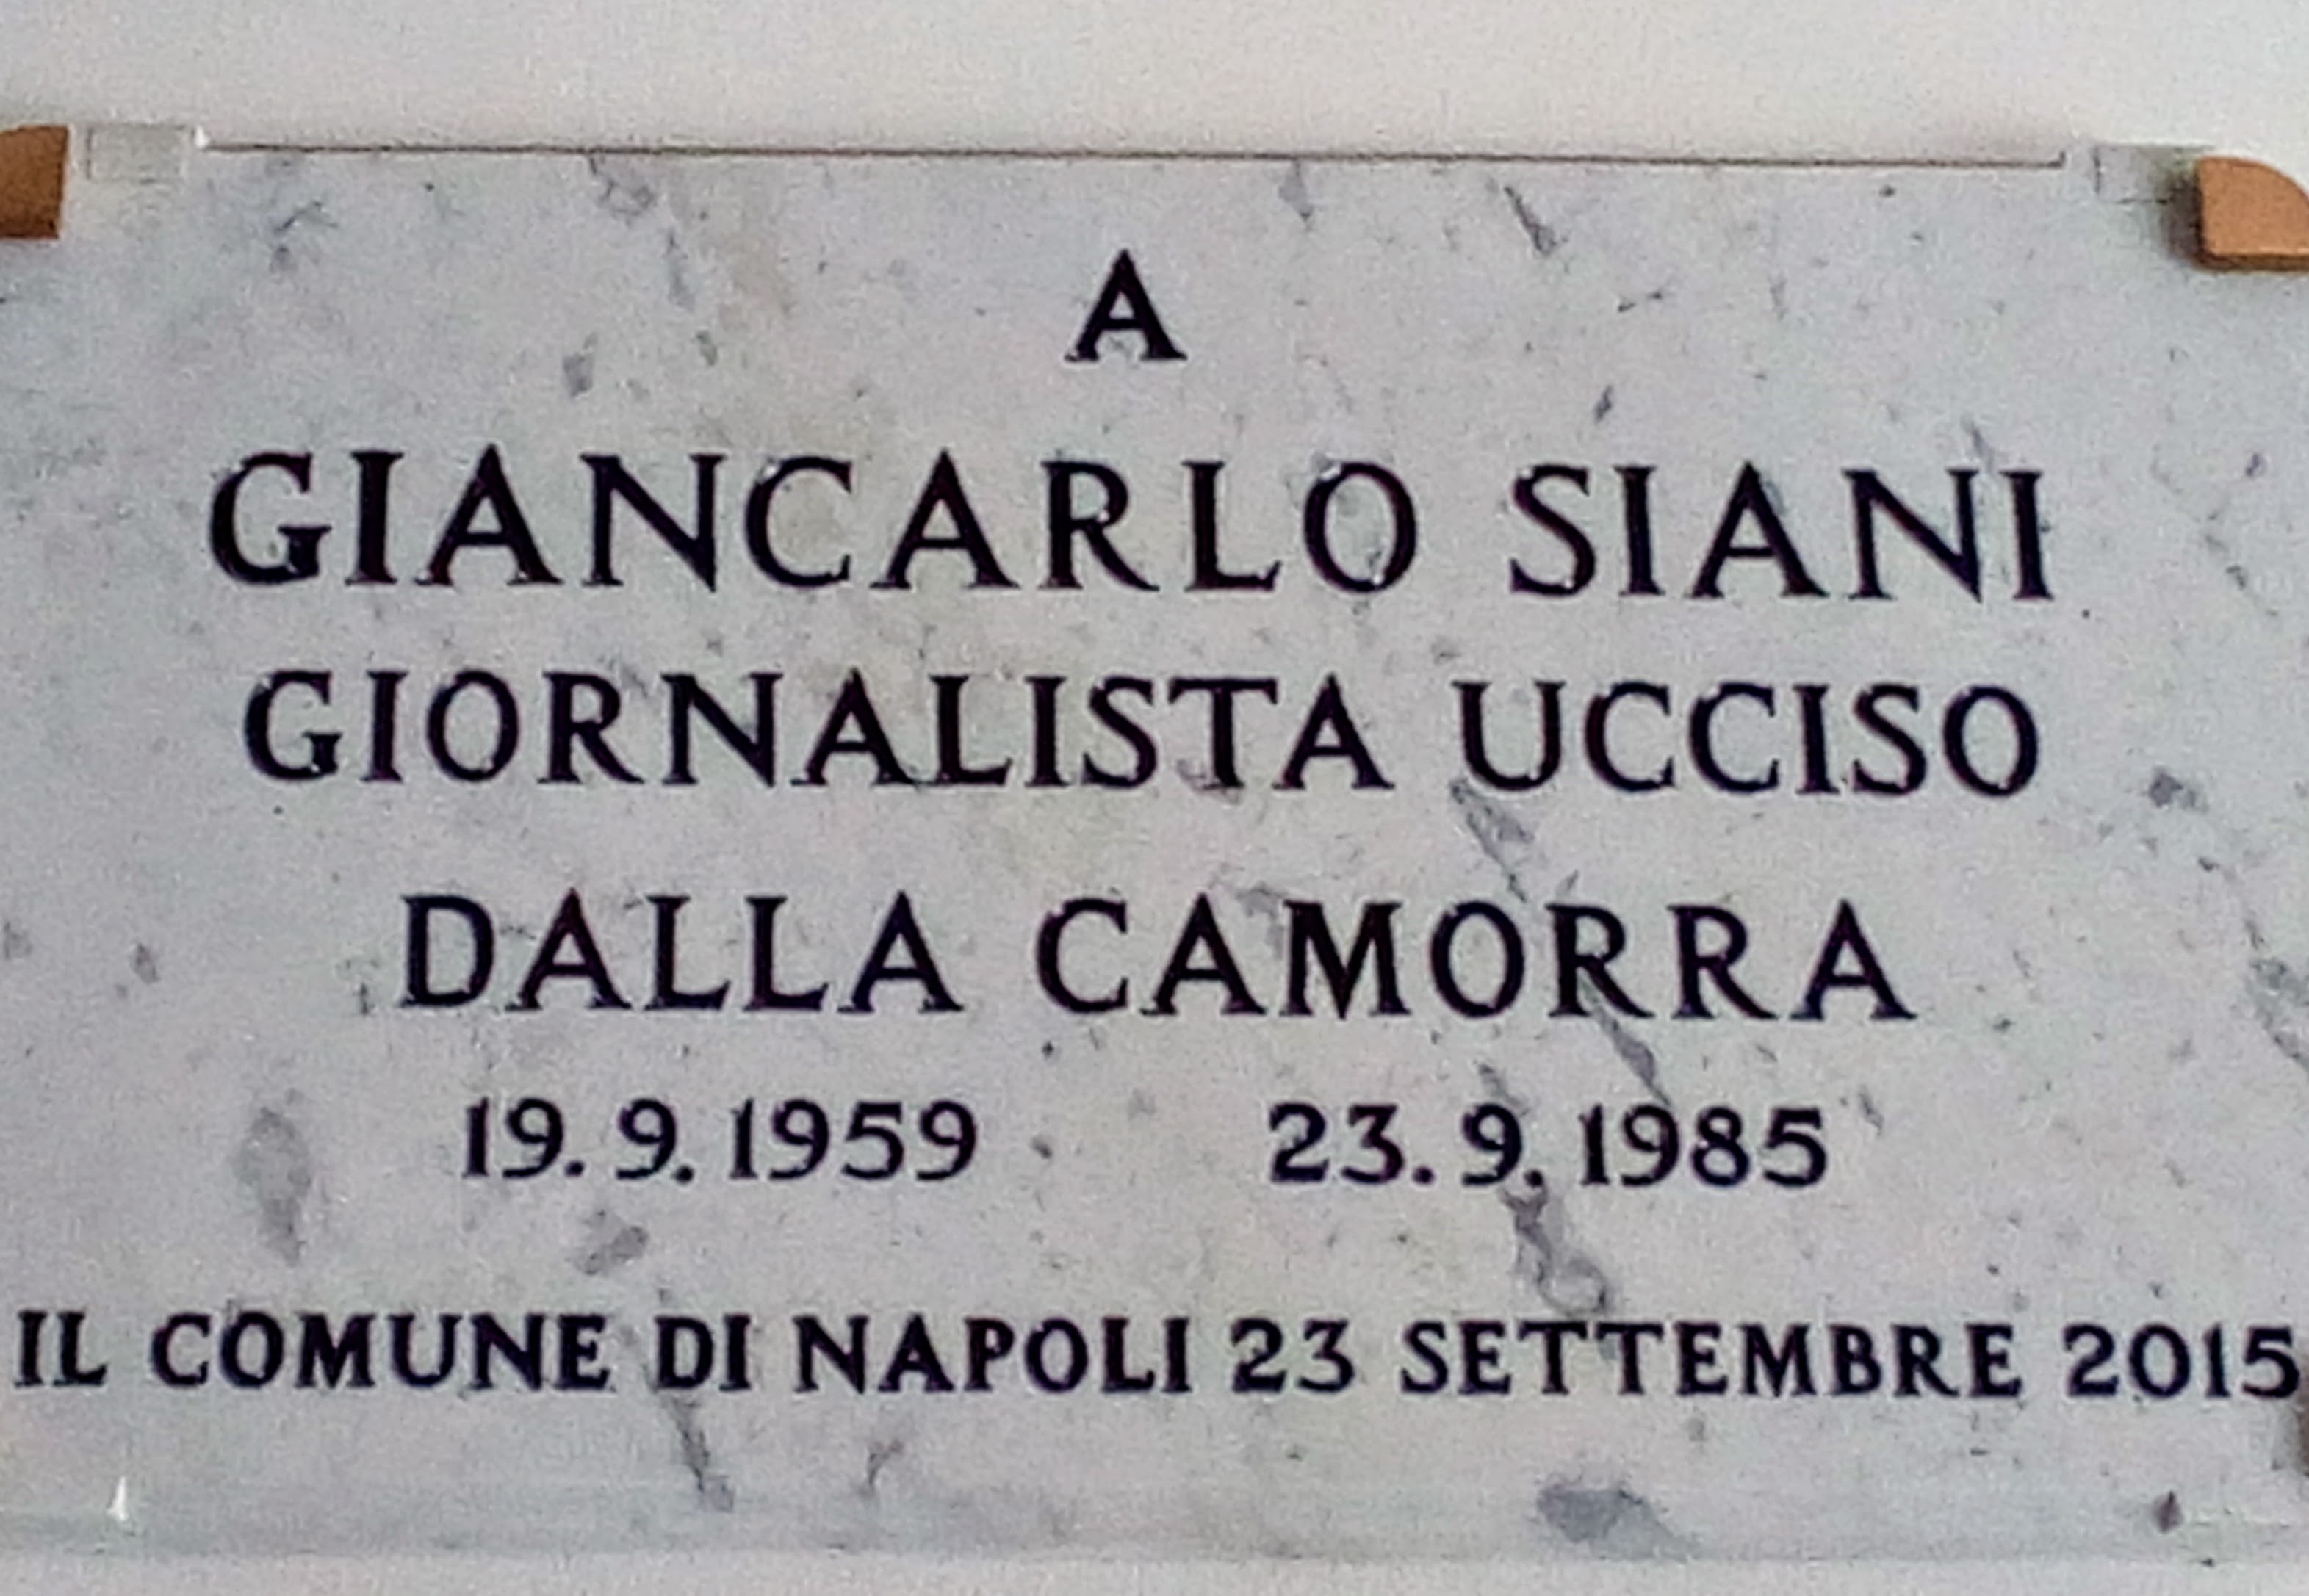 La targa commemorativa per Giancarlo Siani al PAN di Napoli